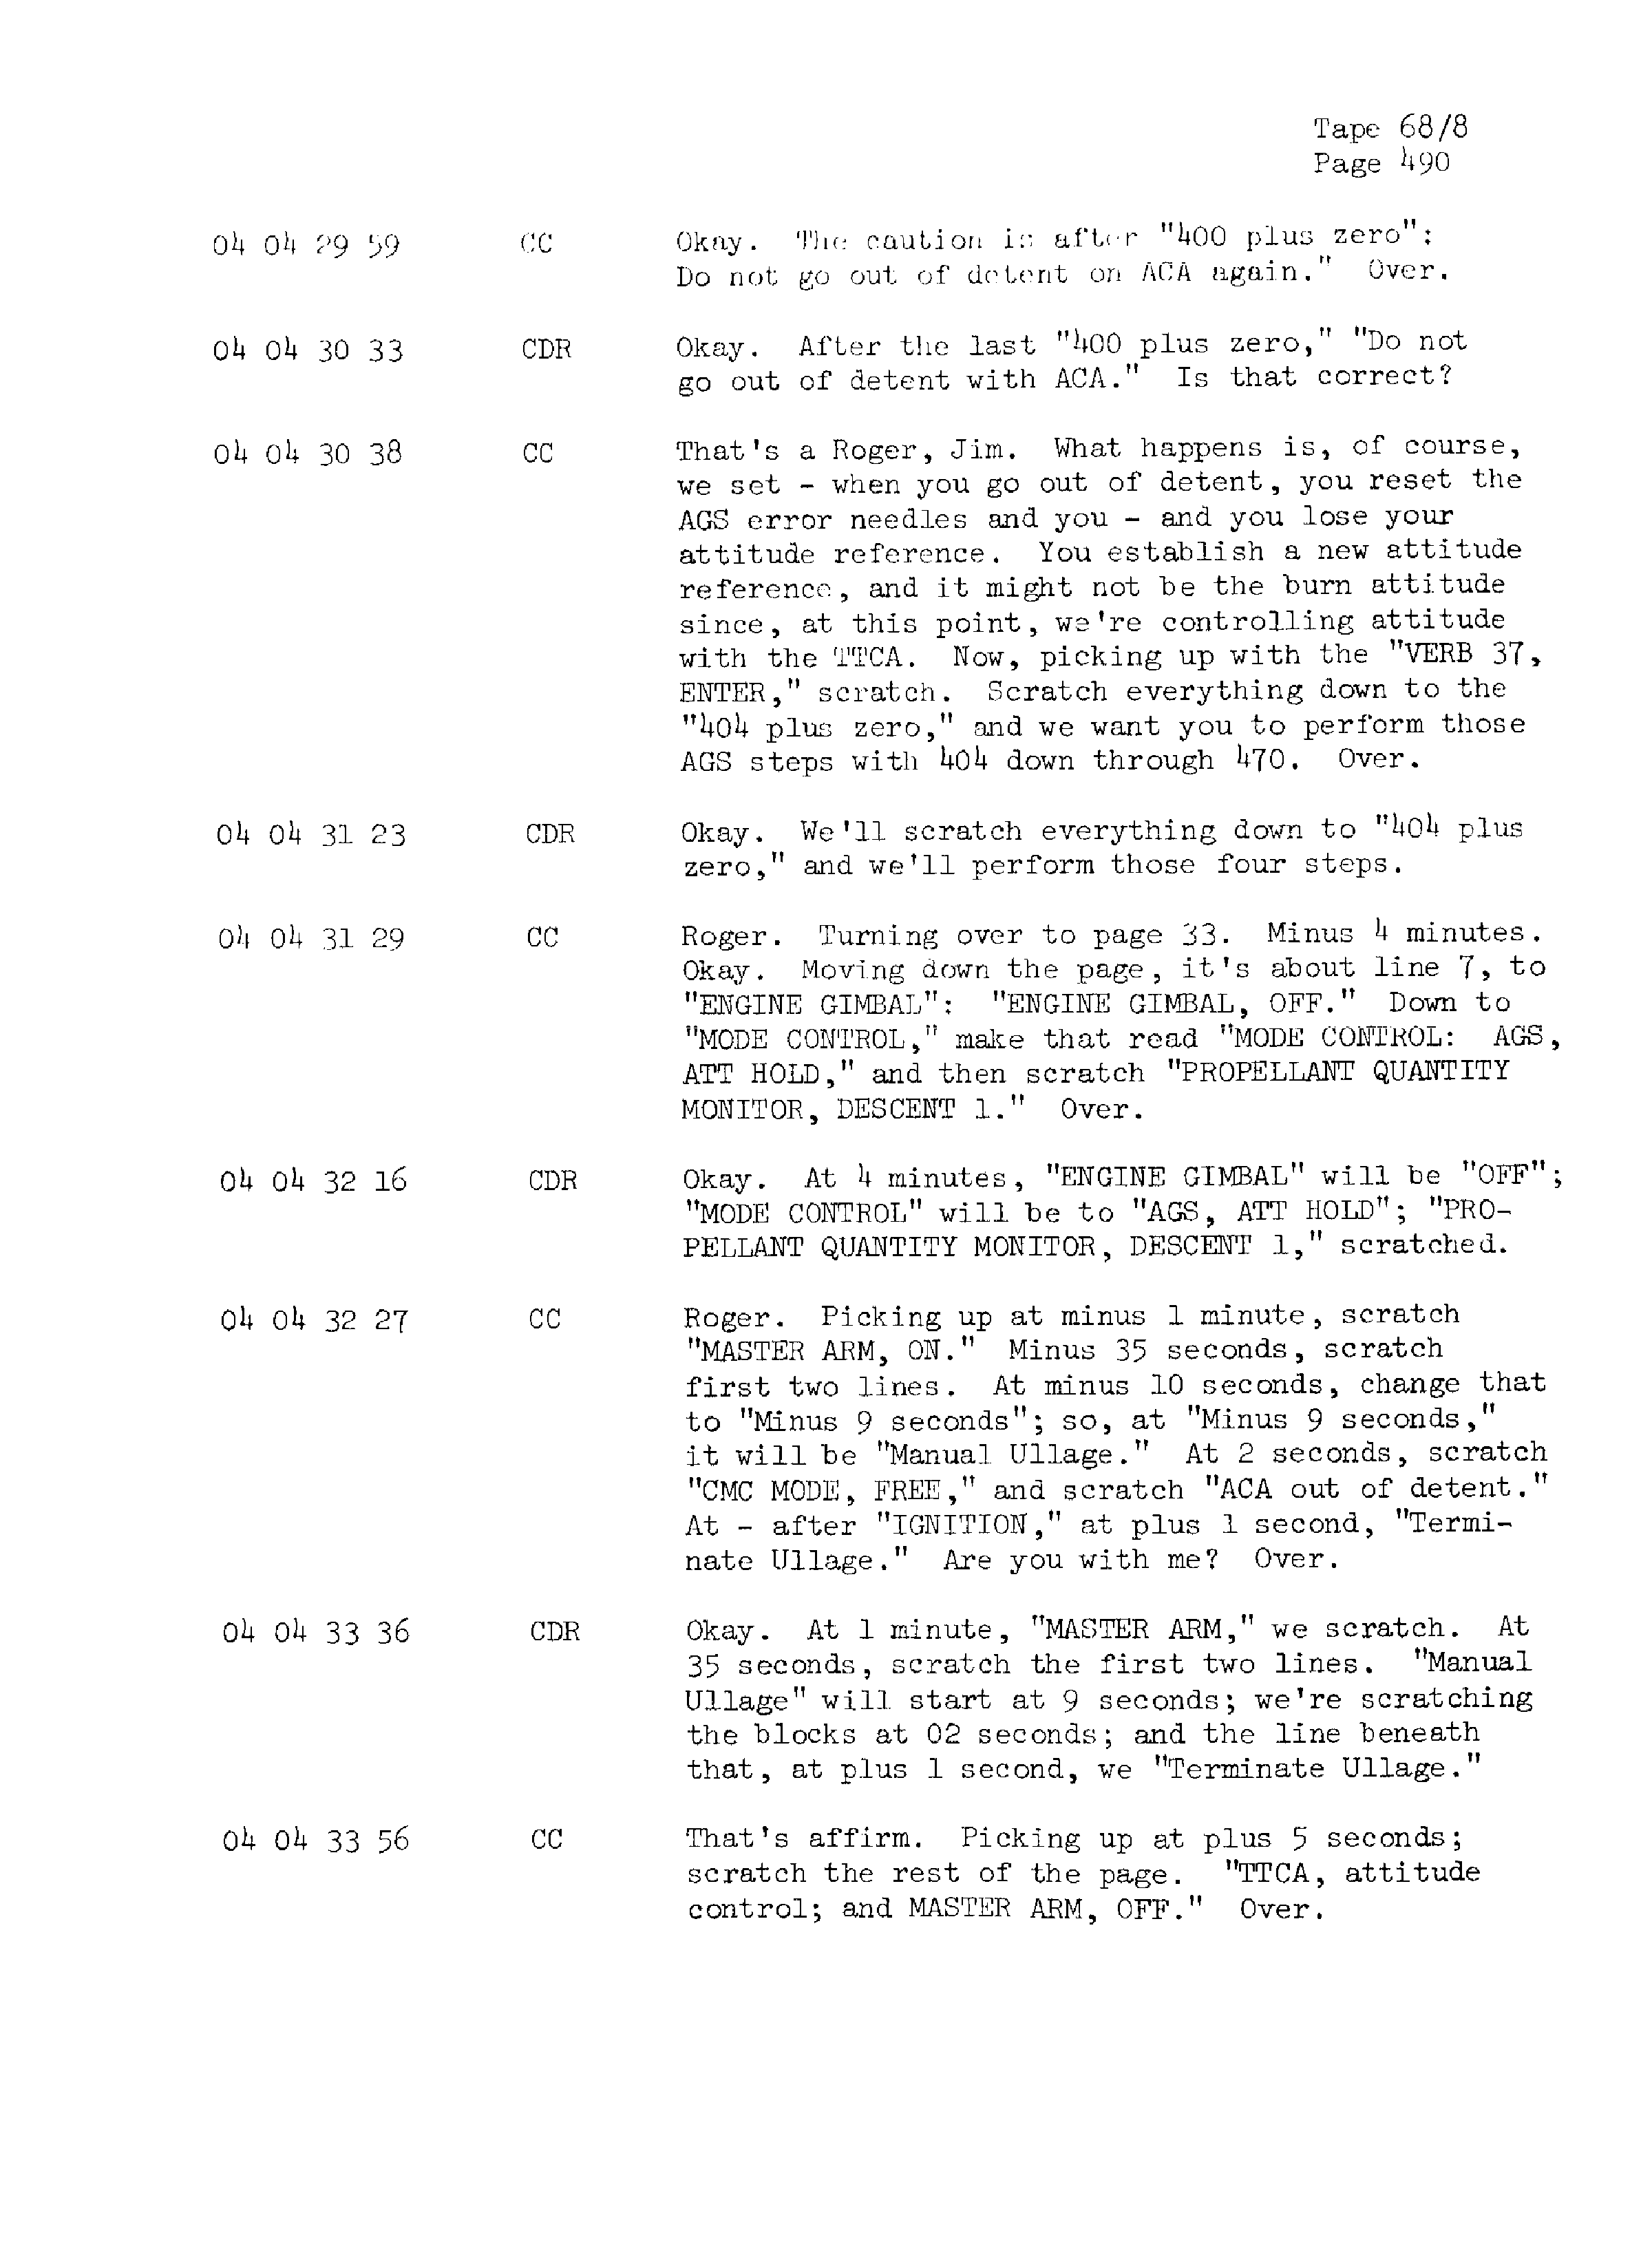 Page 497 of Apollo 13’s original transcript